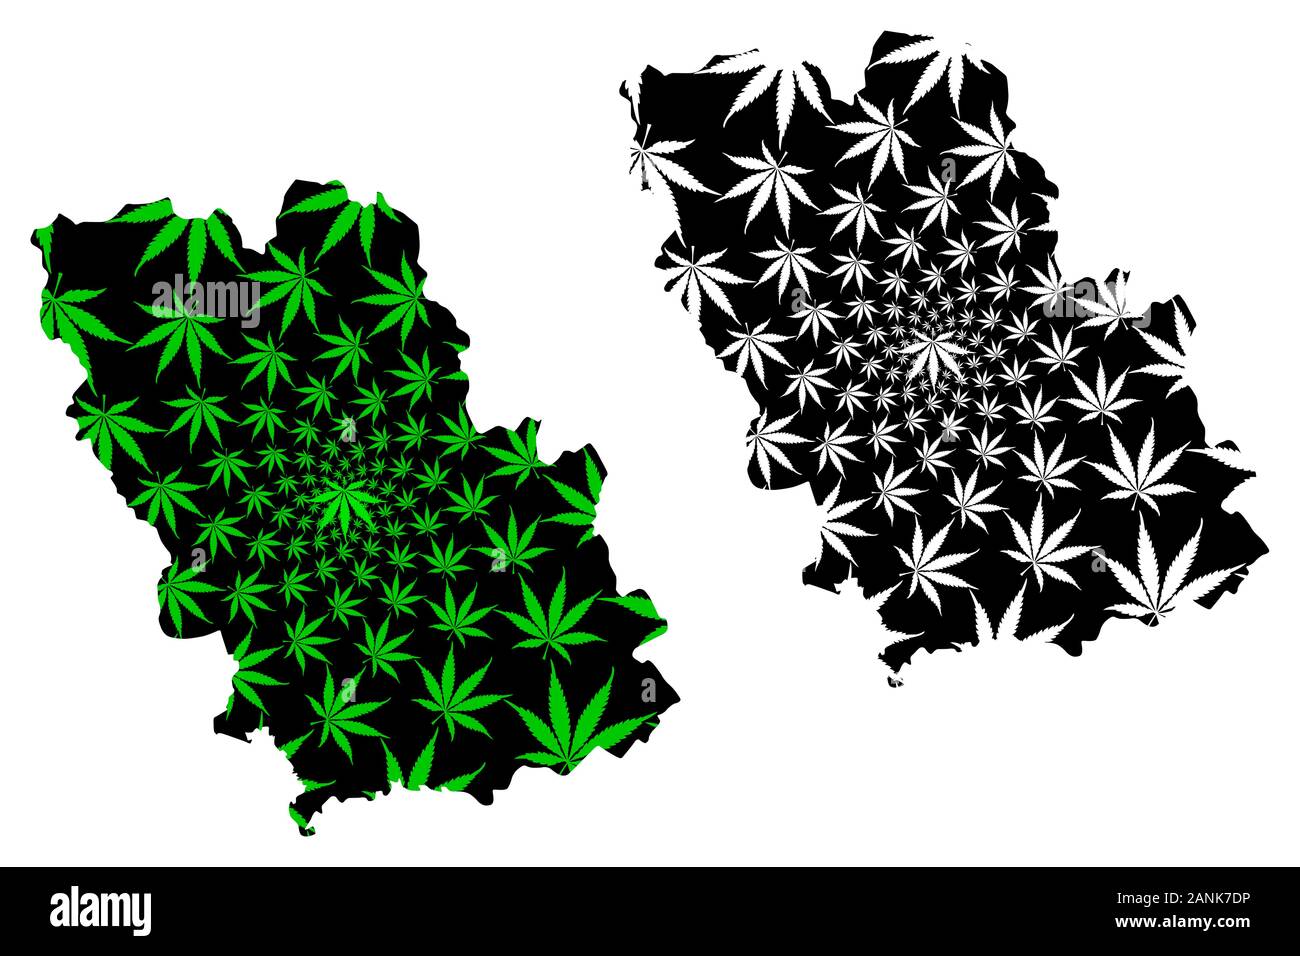 La Contea di Prahova (divisioni amministrative della Romania, Sud - sviluppo Muntenia regione) mappa è progettato Cannabis leaf verde e nero, Prahova mappa mad Illustrazione Vettoriale